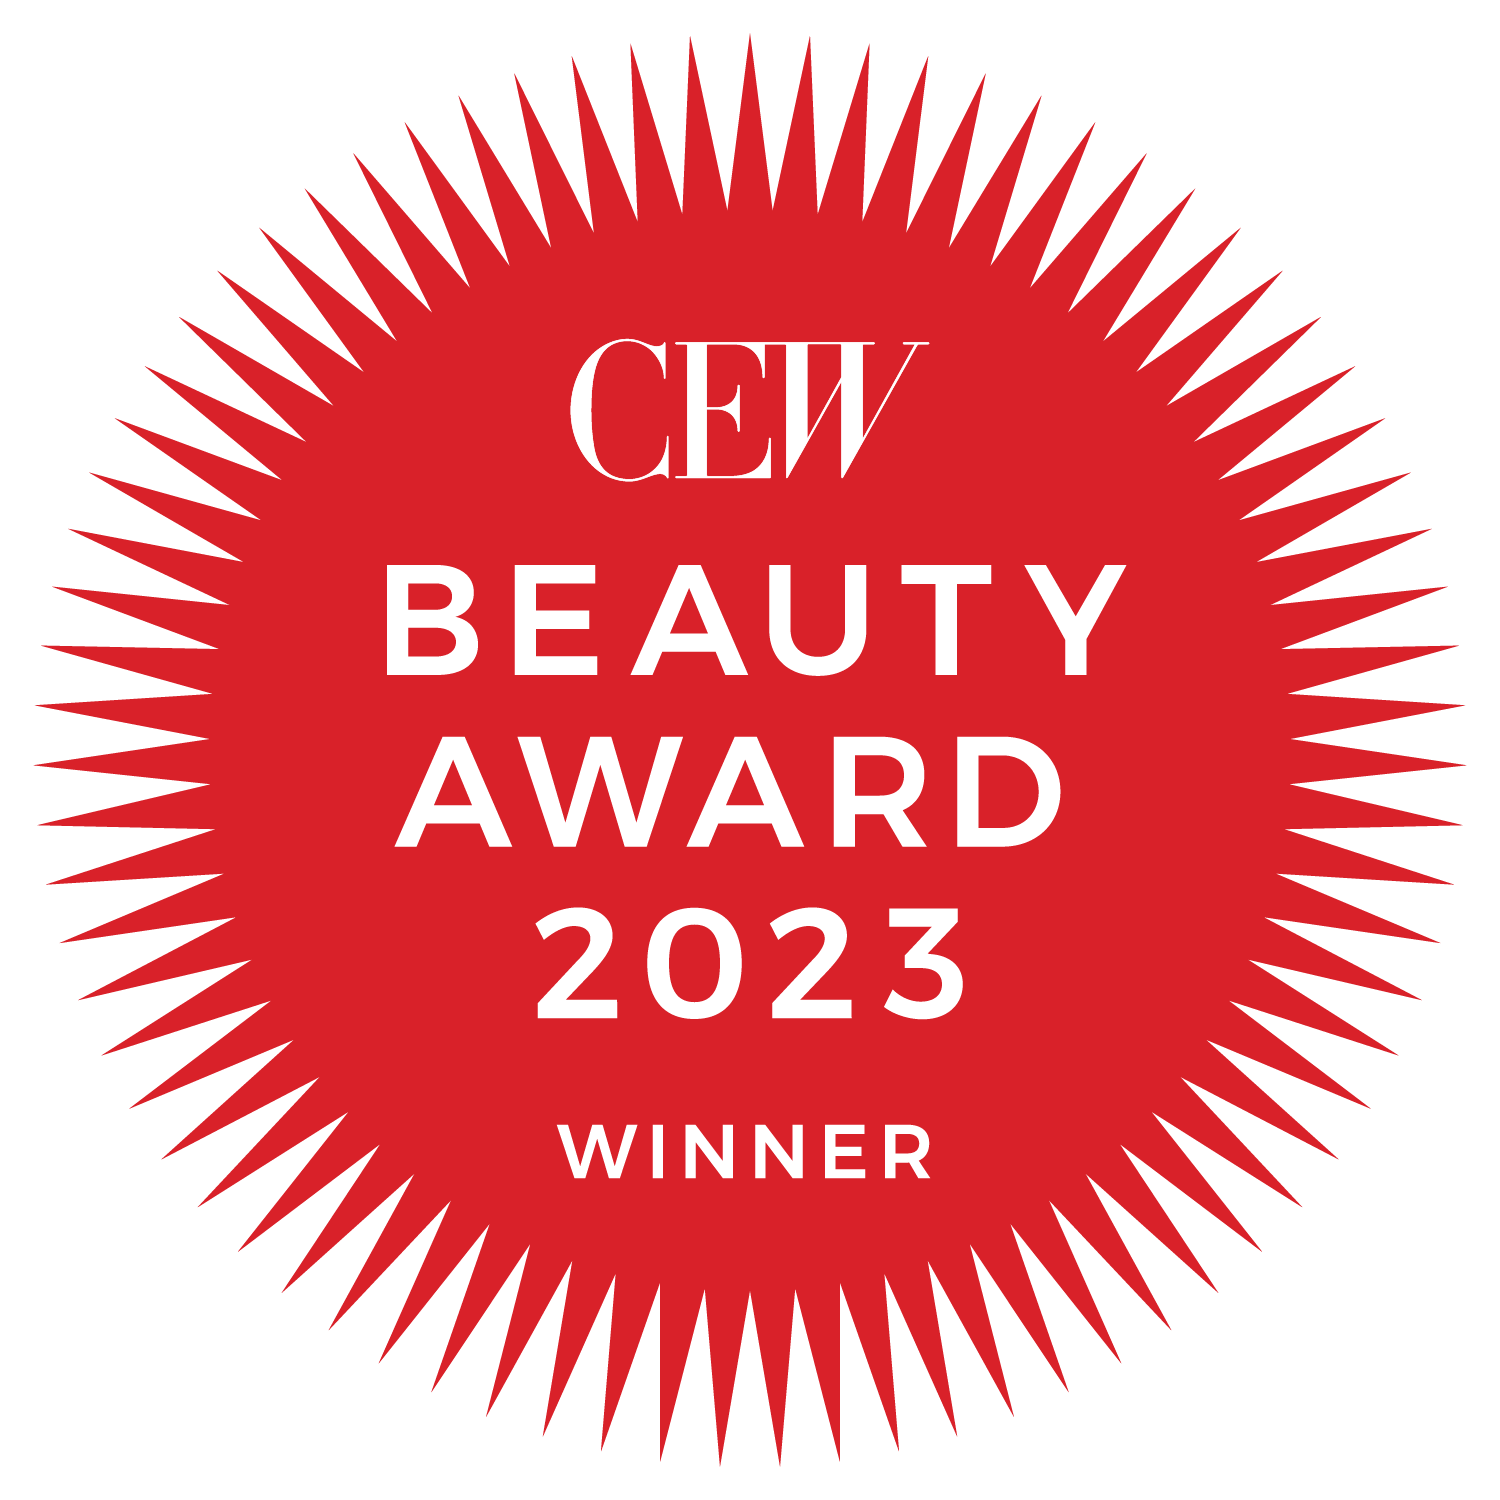 Cew Beauty Awards 2023